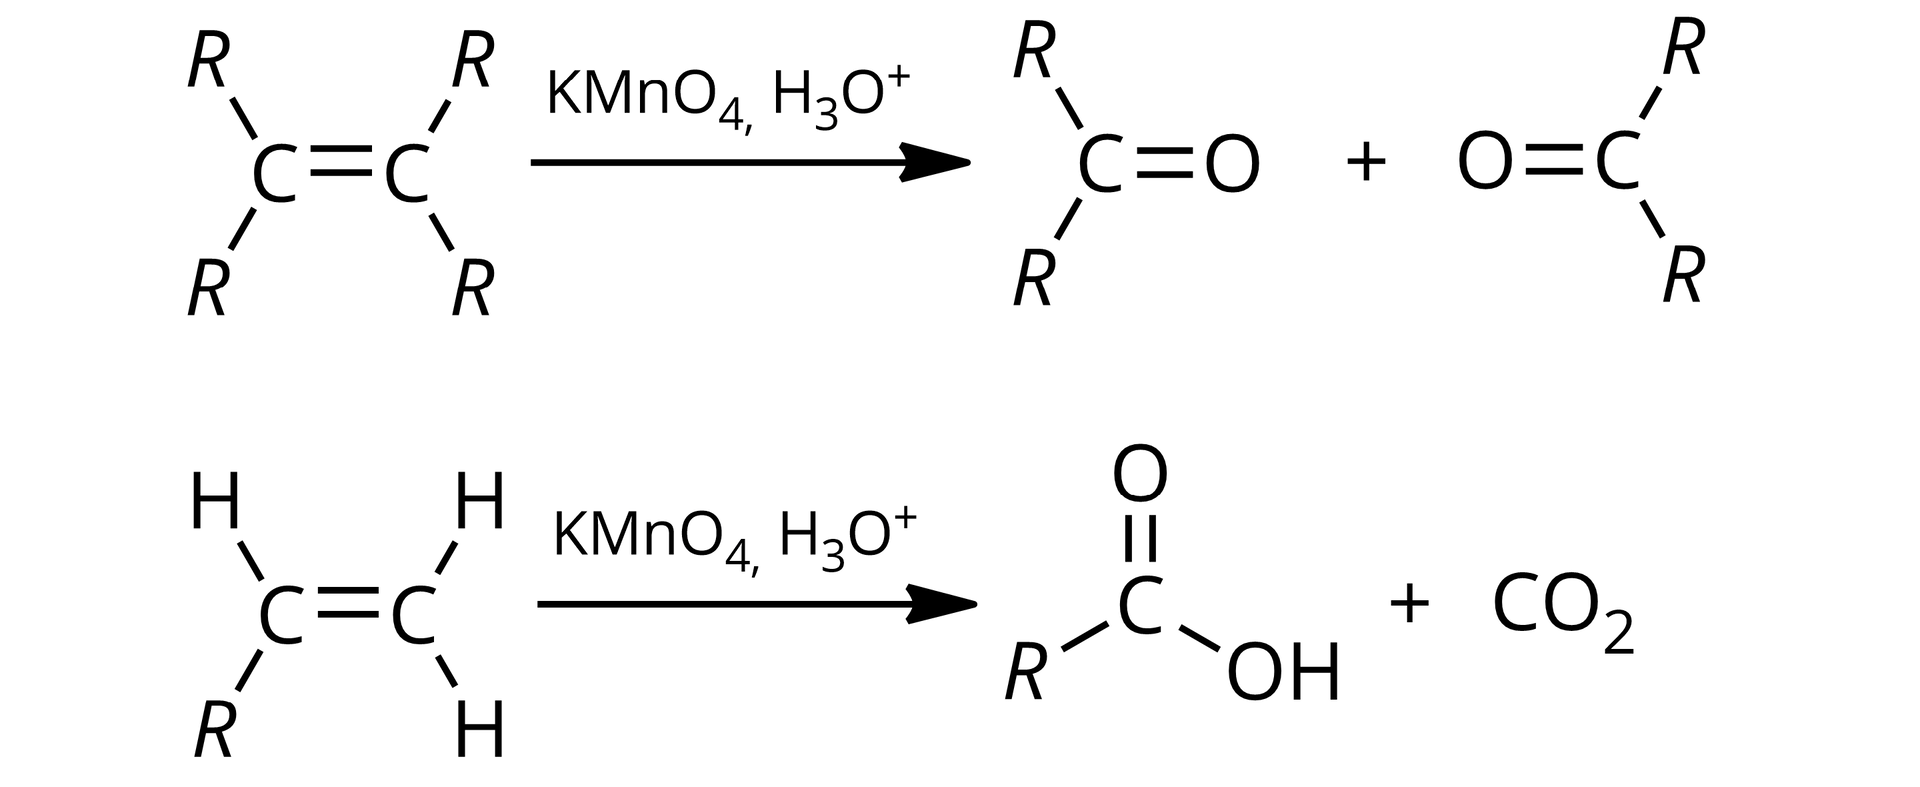 Na ilustracji znajdują się dwa schematyczne równania reakcji utleniania alkenów. Równanie pierwsze: dwa atomy węgla połączone wiązaniem podwójnym, oba atomy węgla tworzą po dwa wiązania pojedyncze z R, strzałka w prawo, nad strzałką zapis nadmanganian potasu, jon hydroniowy, produkty reakcji: dwa związki karbonylowe, w których do atomu węgla związane są dwie grupy R poprzez wiązania pojedyncze oraz tlen poprzez wiązanie podwójne. Równanie drugie: dwa atomy węgla połączone wiązaniem podwójnym, jeden z atomów węgla tworzy dodatkowo dwa wiązania pojedyncze z atomami wodoru, do drugiego węgla dołączony wodór oraz R, strzałka w prawo, nad strzałką zapis nadmanganian potasu, jon hydroniowy, produkty reakcji: kwas karboksylowy o wzorze RCOOH i dwutlenek węgla.